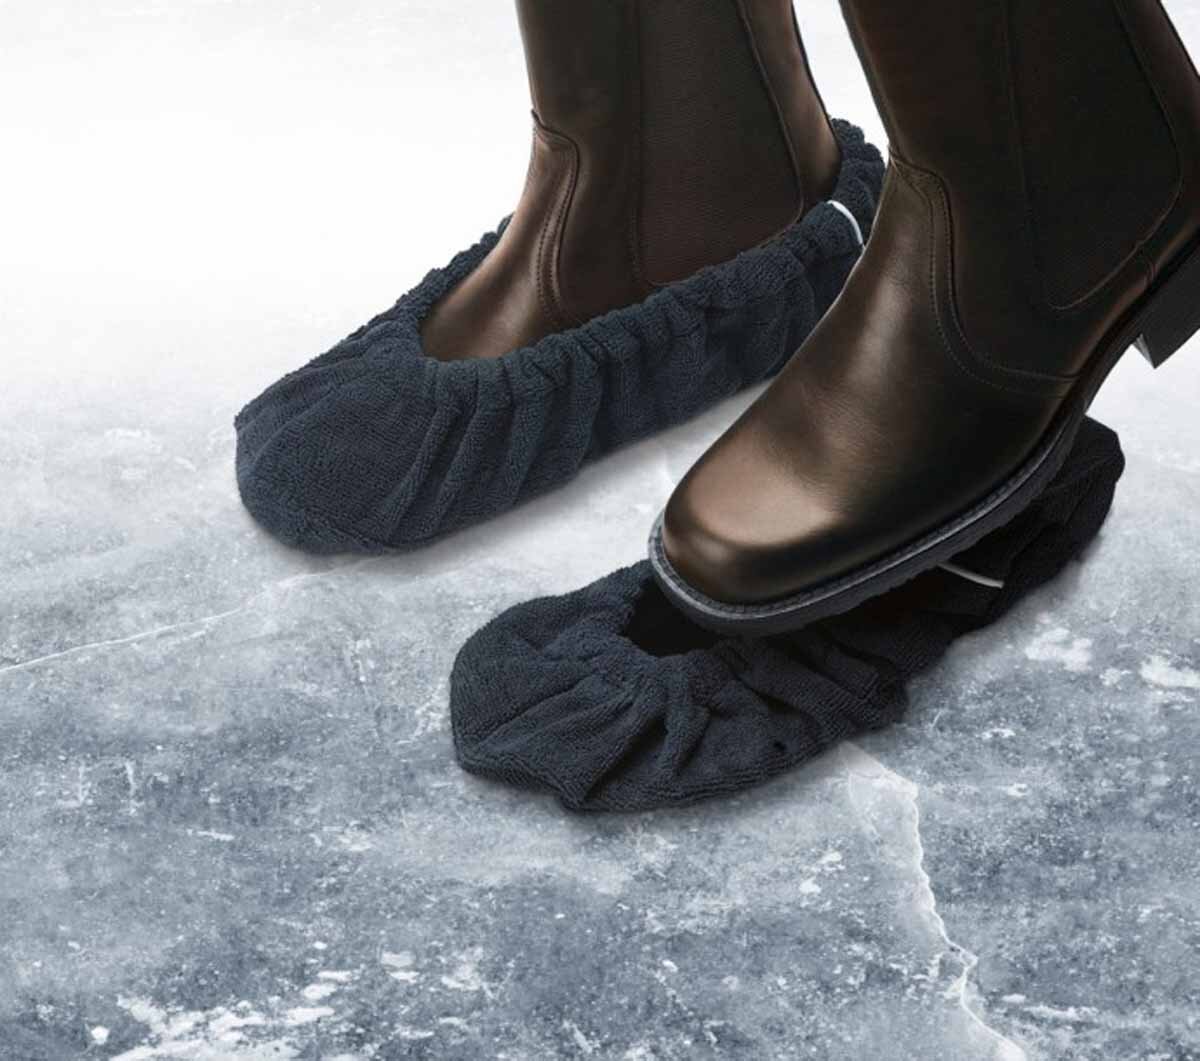 Скользкие подошвы зимних. Скользкие зимние ботинки. Нескользящая обувь для зимы. Сапожки на нескользящей подошве. Подошва для зимней обуви.